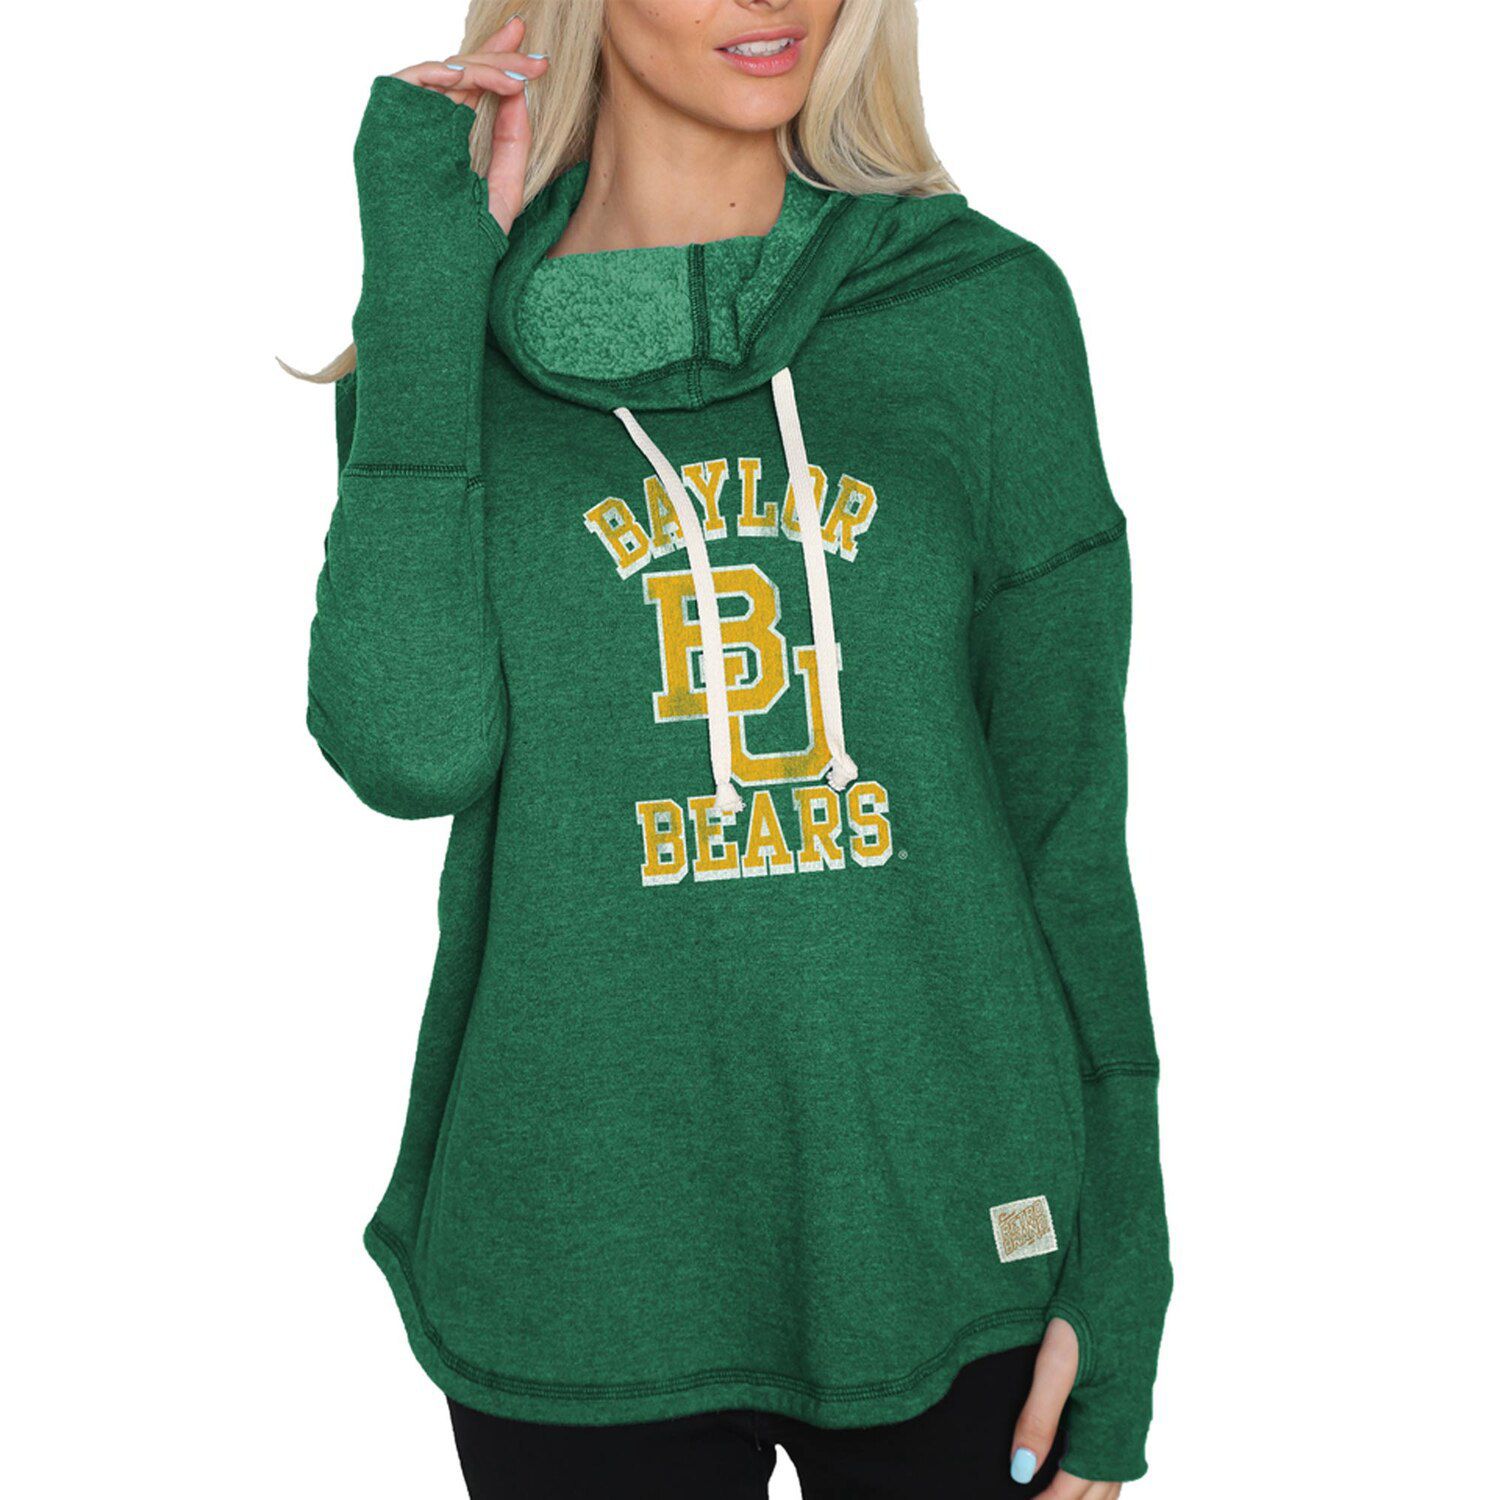 цена Женский оригинальный ретро-брендовый зеленый пуловер с капюшоном Baylor Bears, пуловер с воротником-воронкой